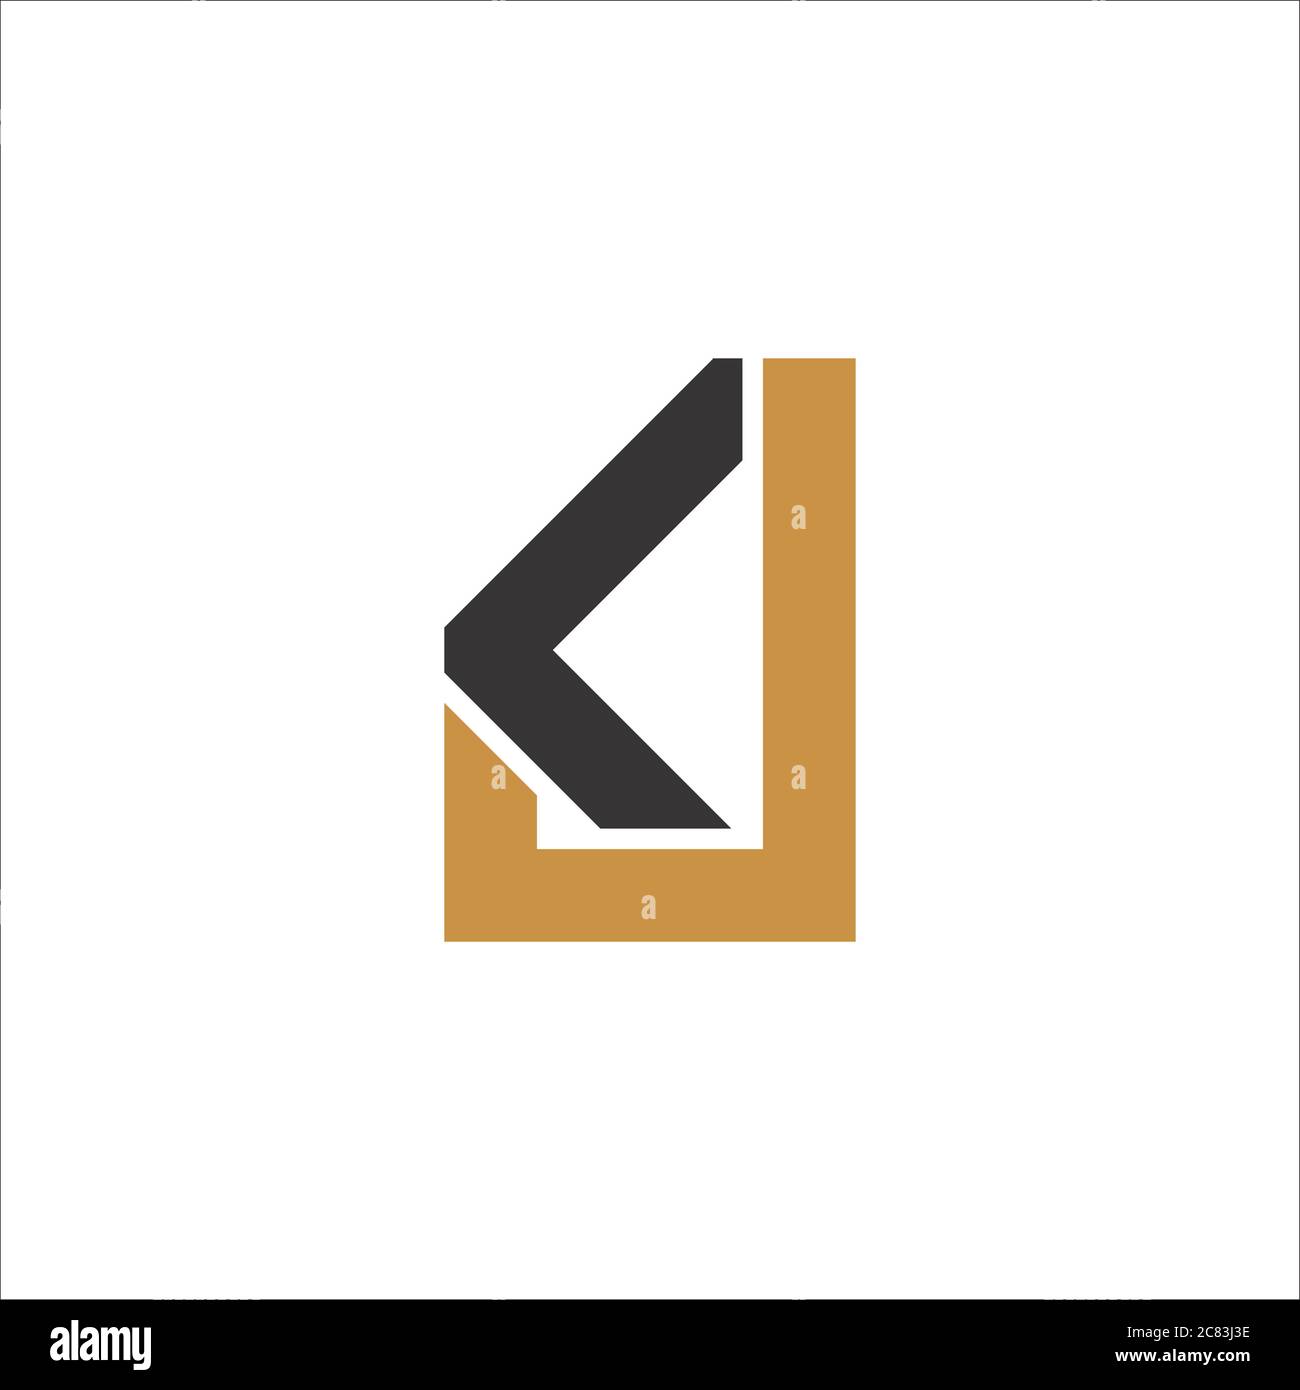 Initial letter jk logo or kj logo vector design template Stock Vector